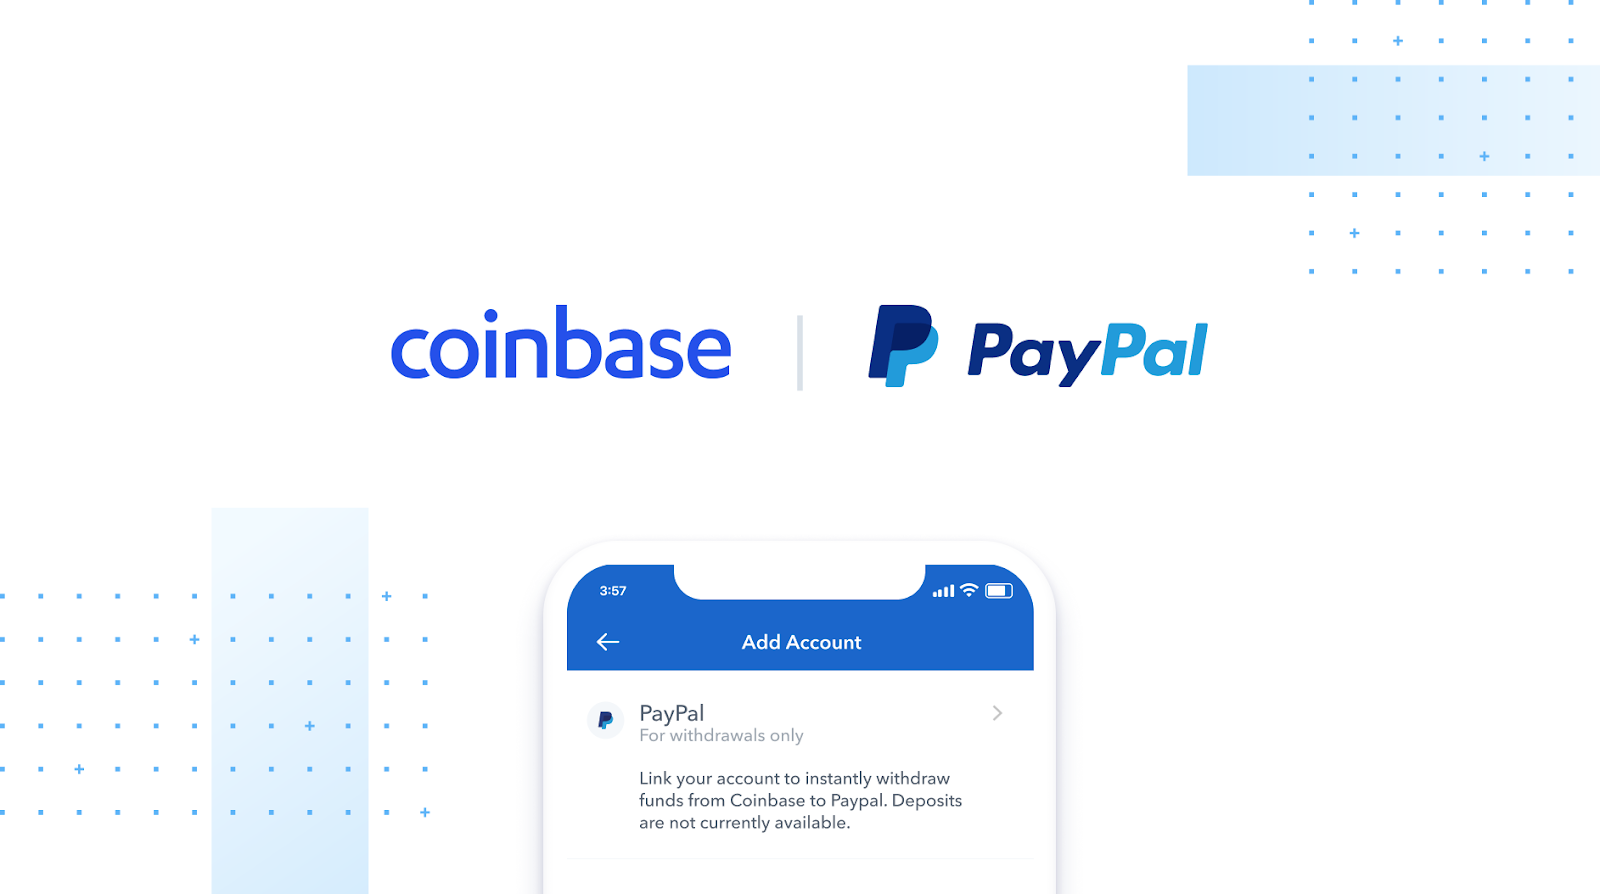 Coinbase PayPal